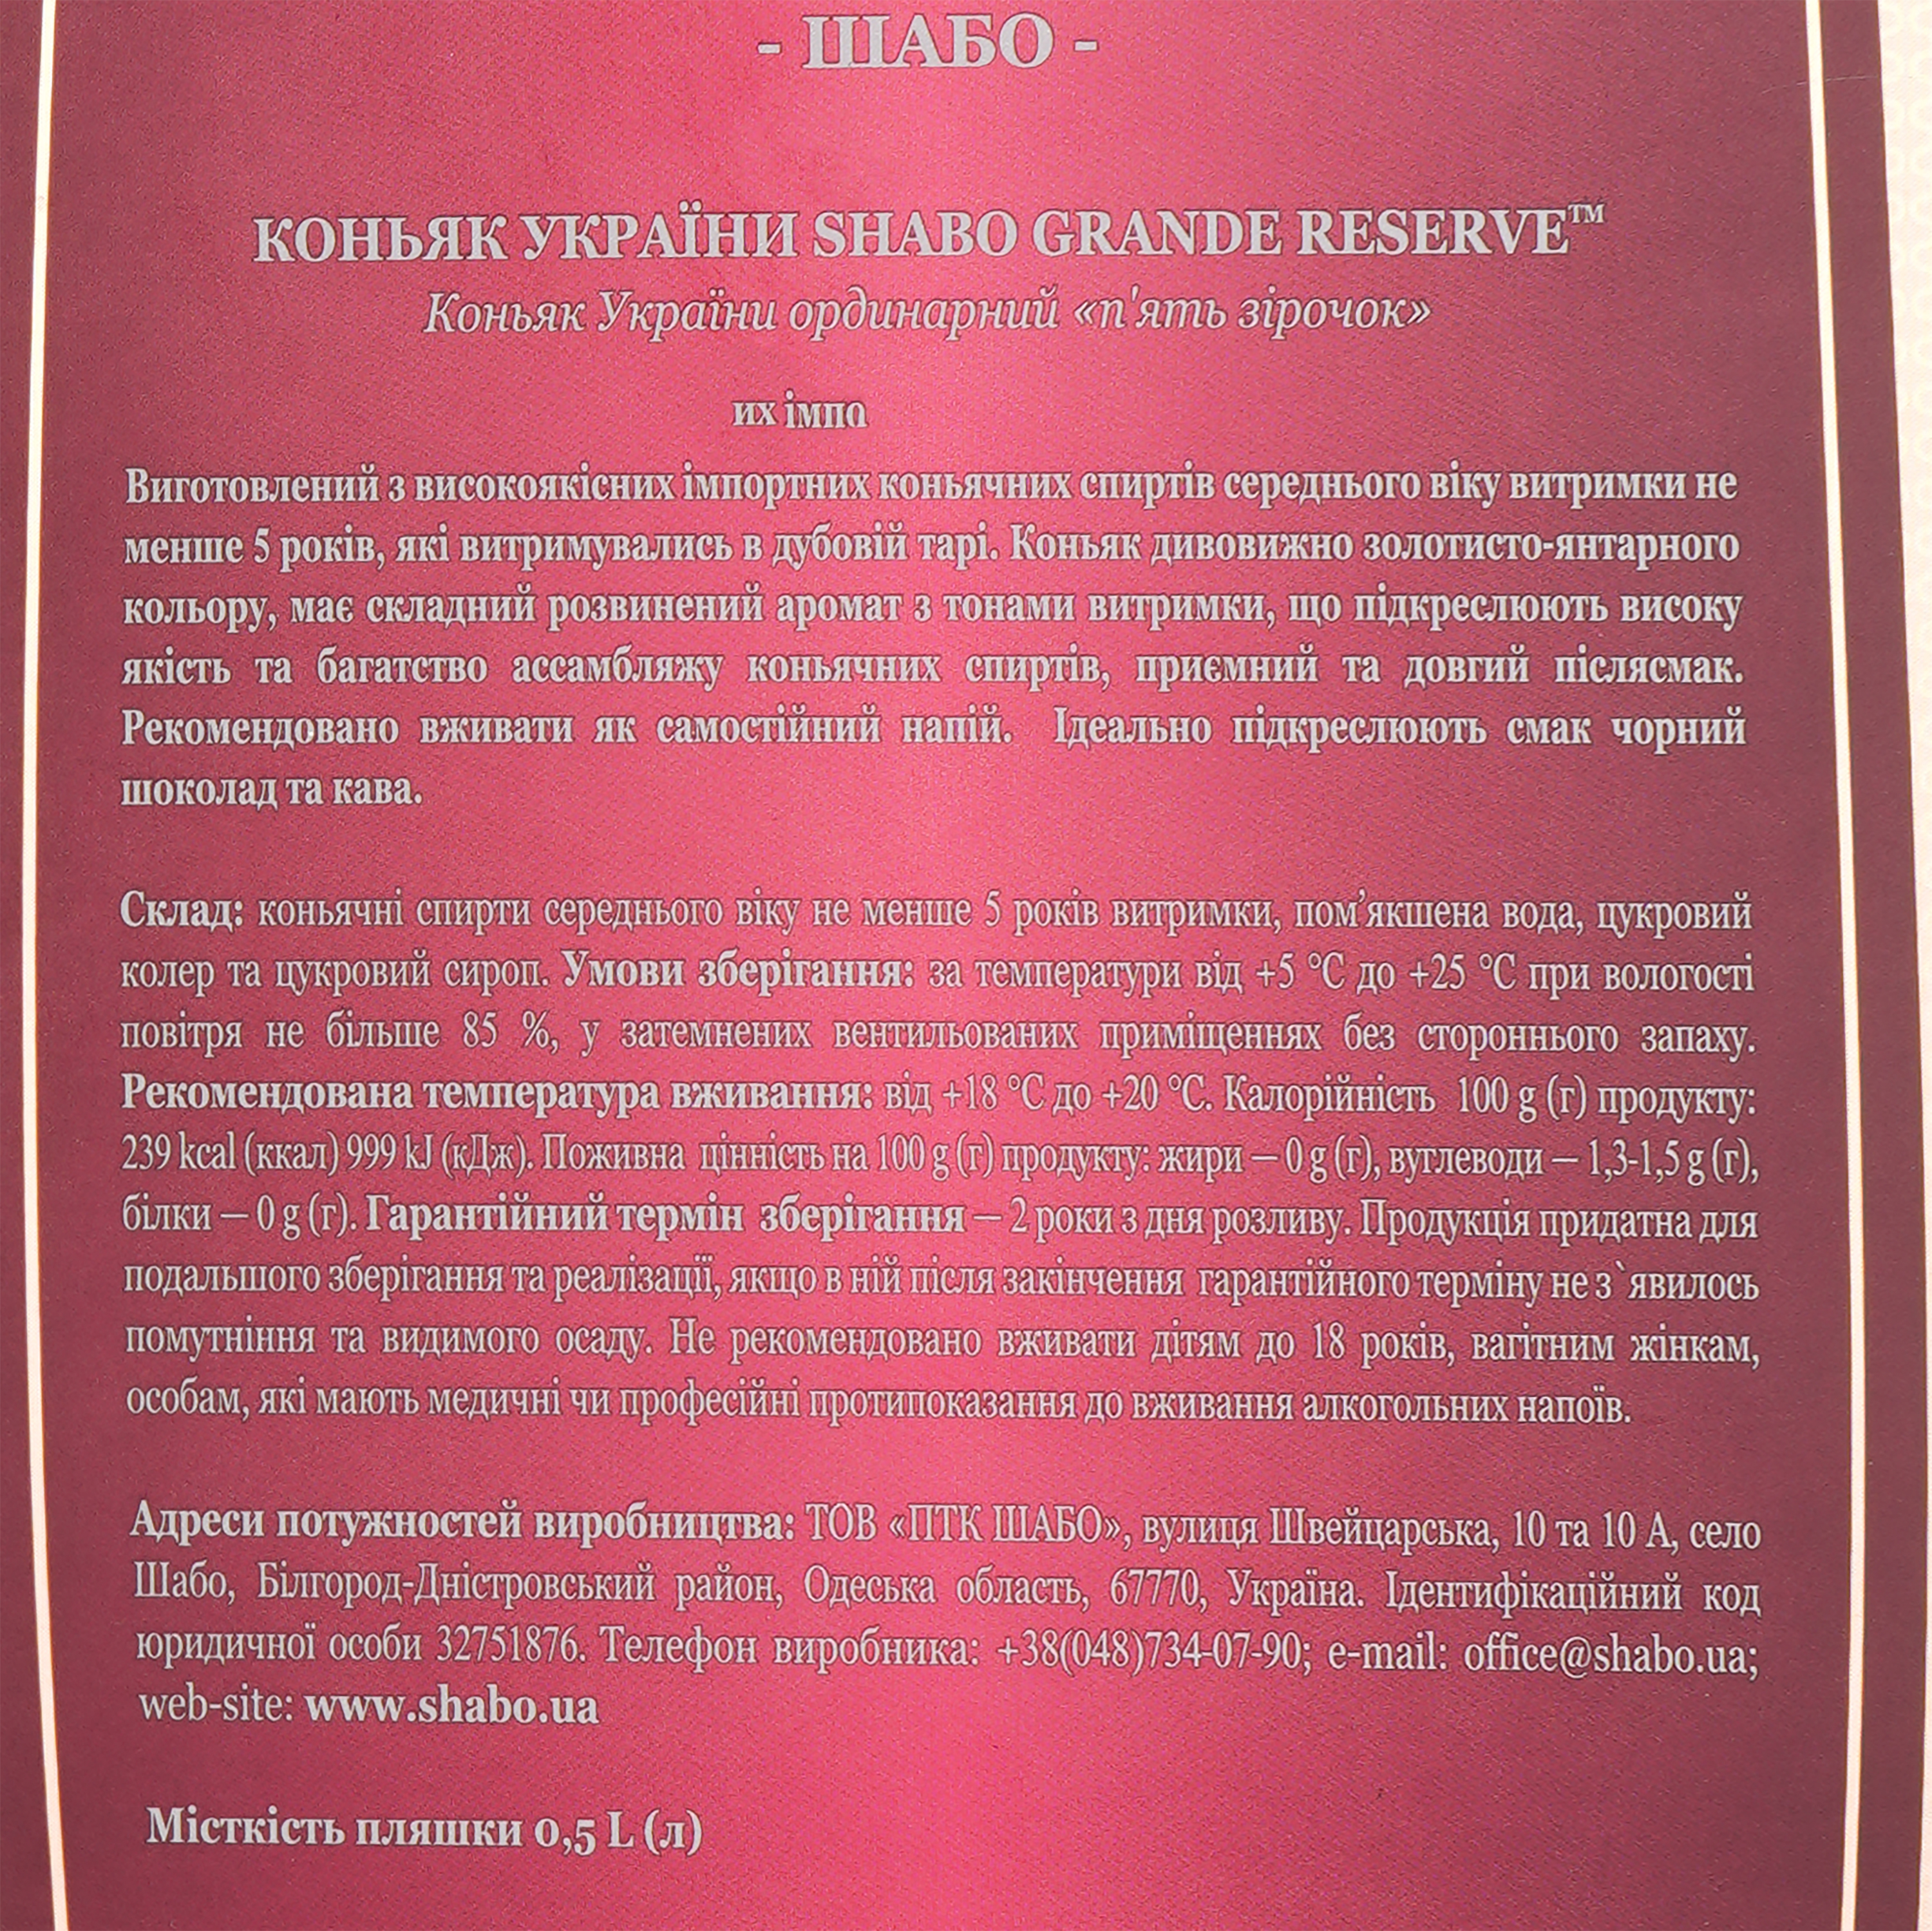 Коньяк України Shabo Grande Reserve,подарункова упаковка, 5 років, 40%, 0,5 л - фото 4